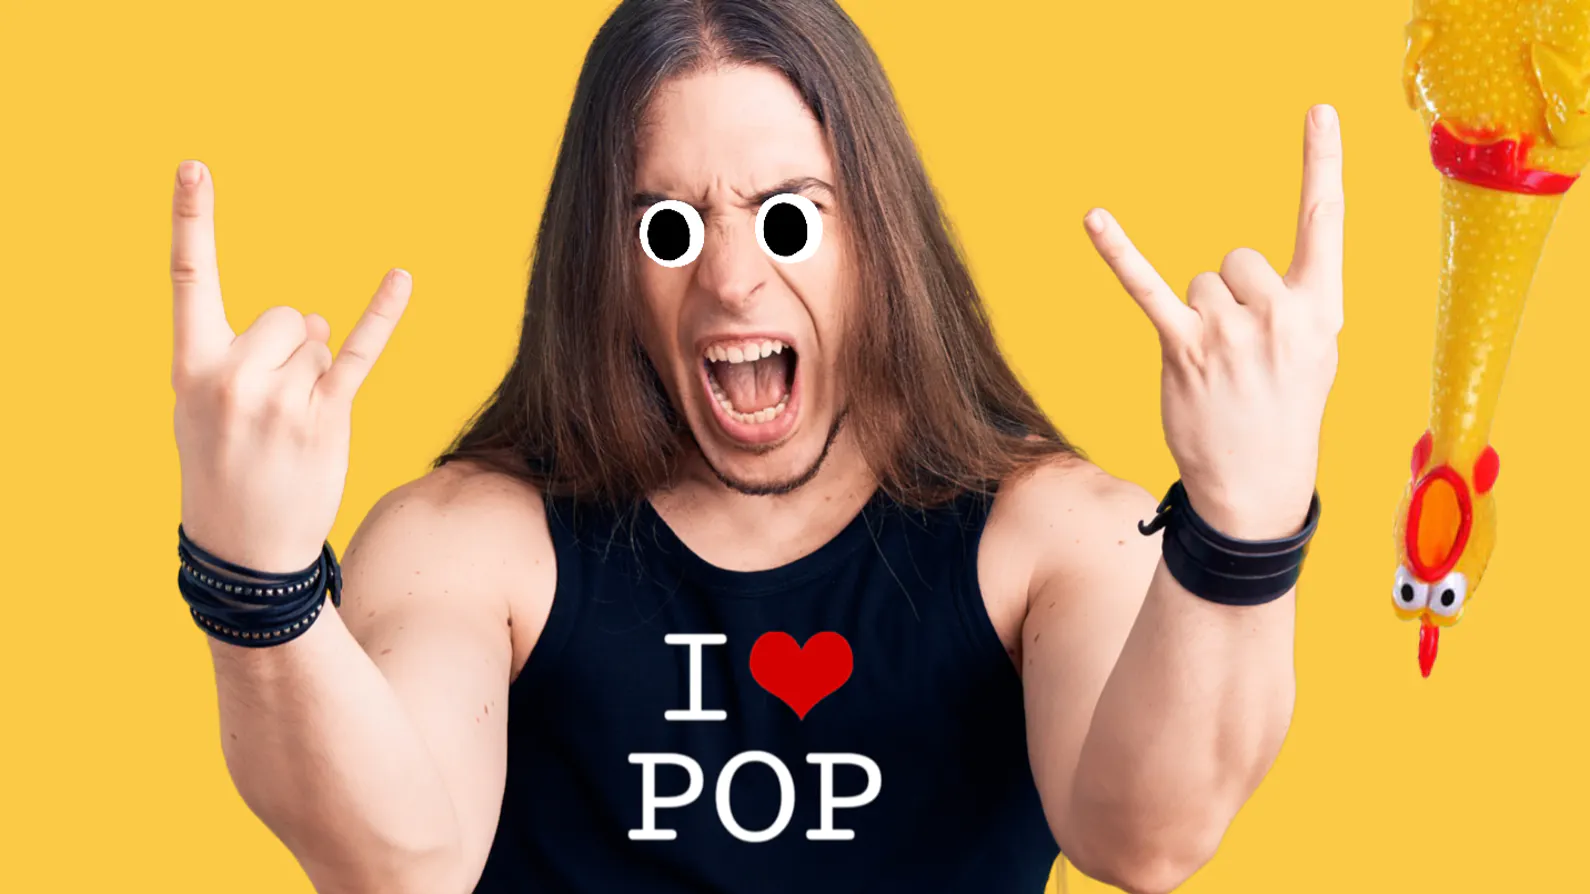 A long haired man wearing an I Heart Pop t-shirt